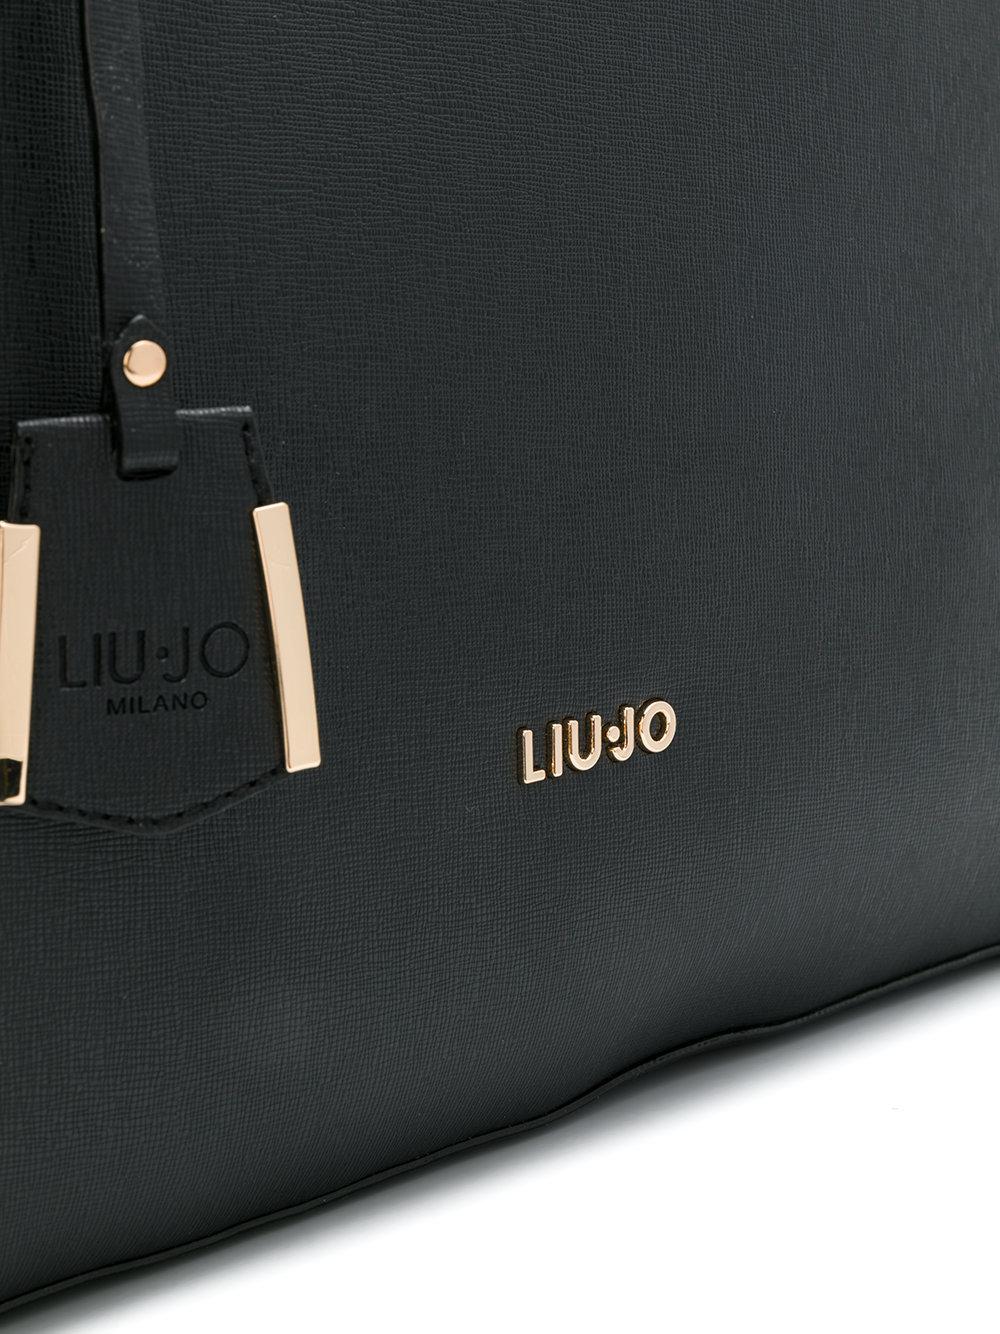 Liu Jo Isola Laptop Bag in Black - Lyst